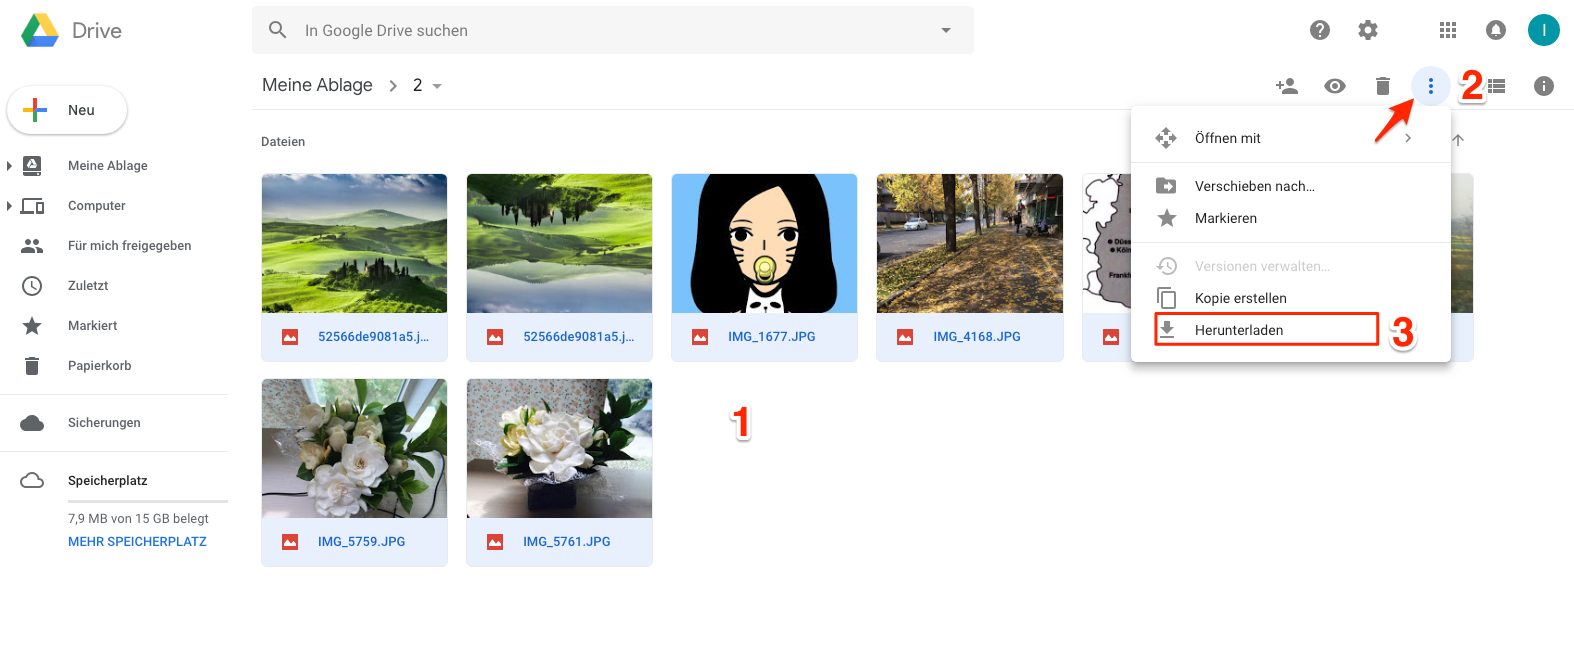 Wie kann man Fotos von Google Drive auf PC speichern